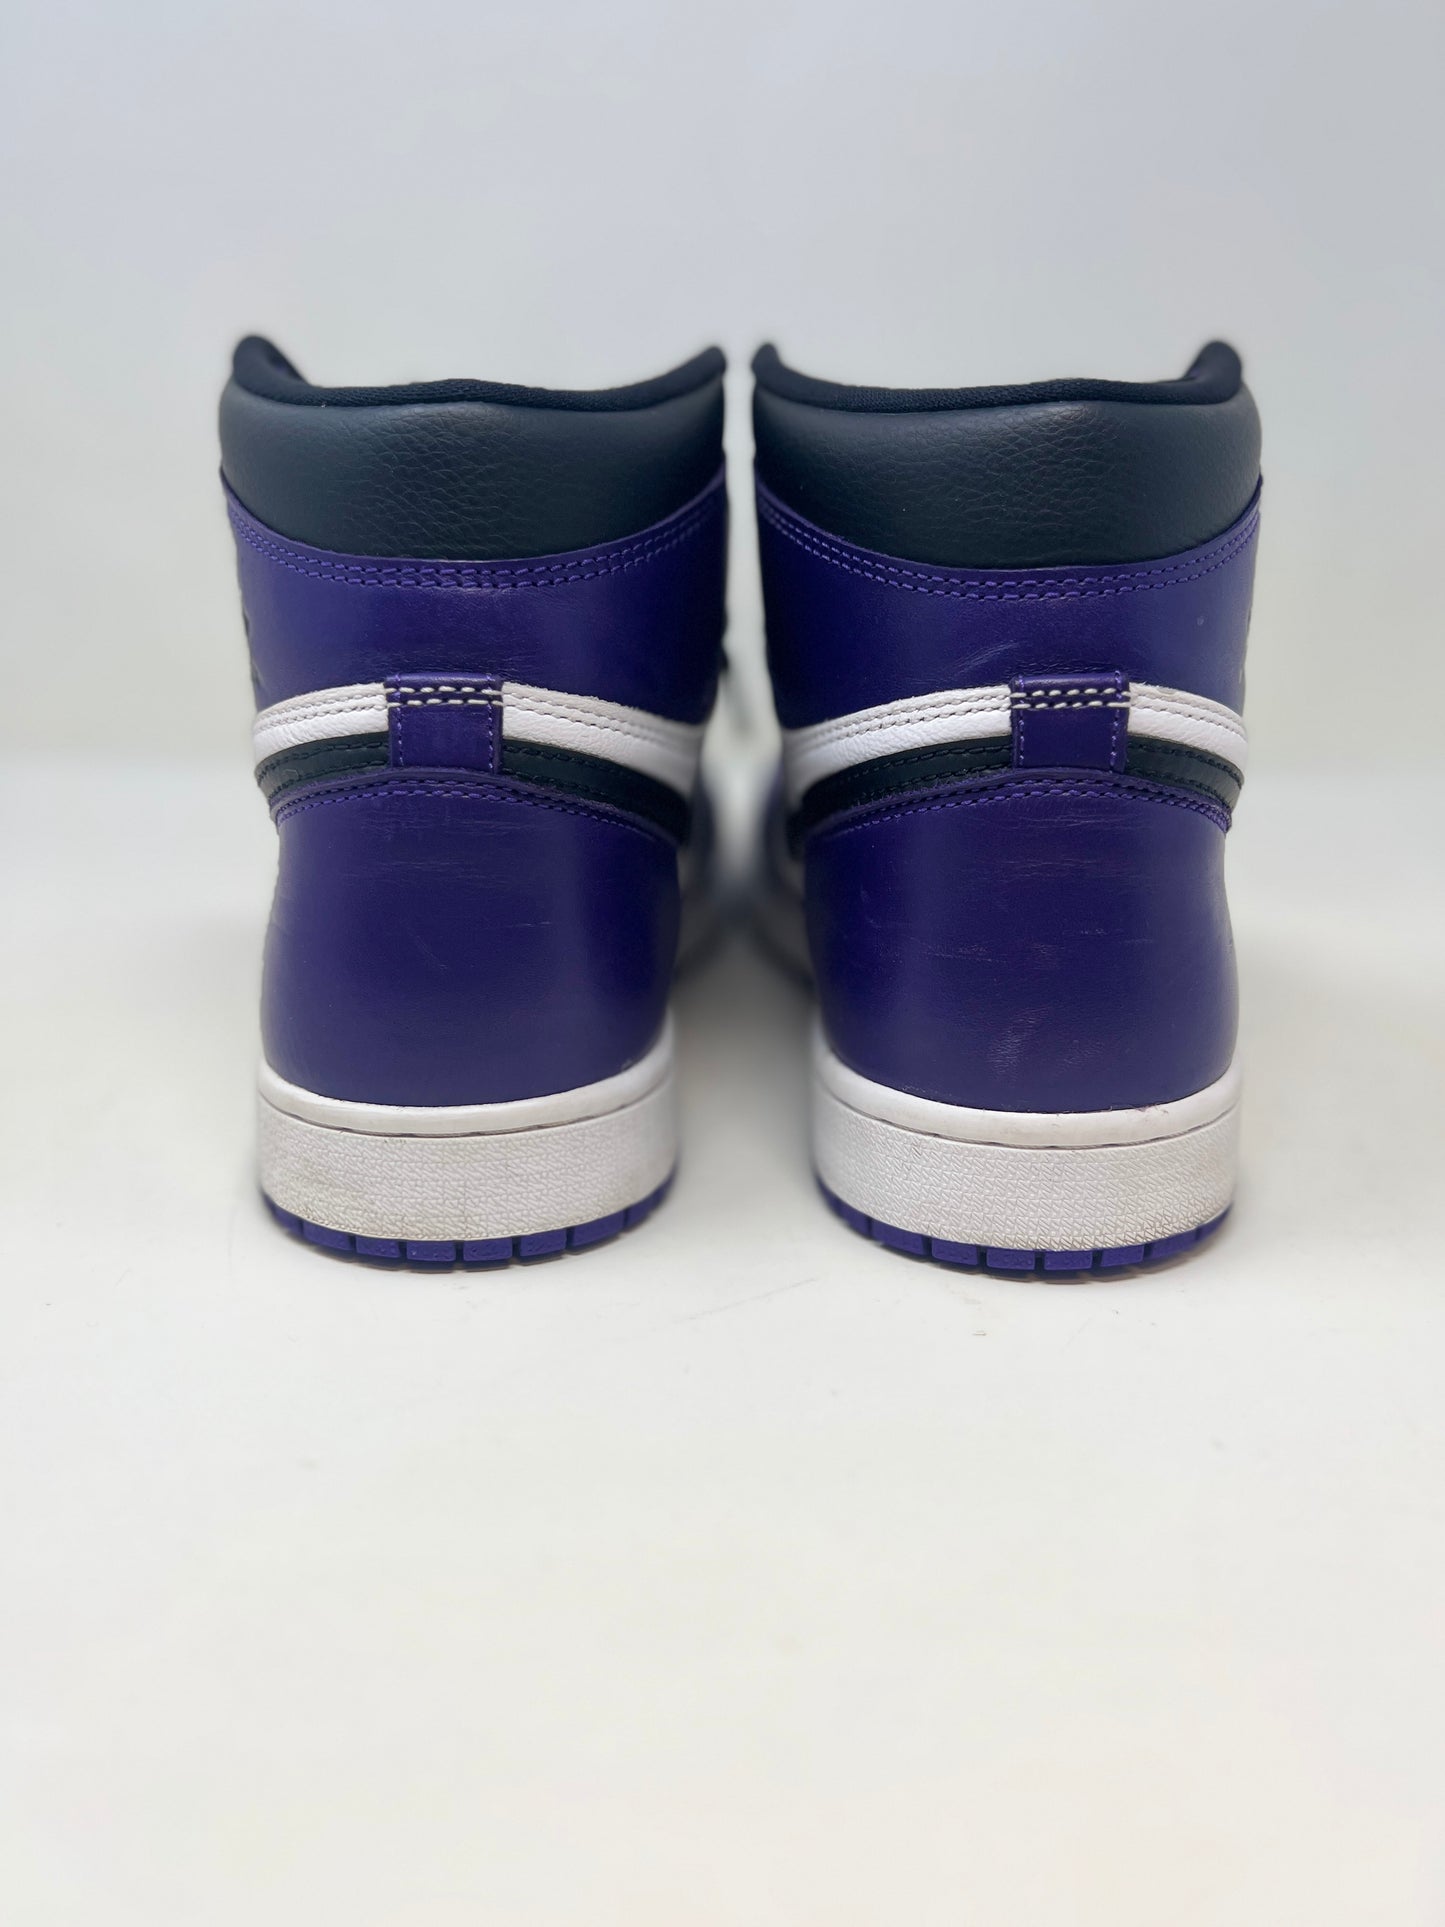 Nike Air Jordan 1 High OG ‘Court Purple’